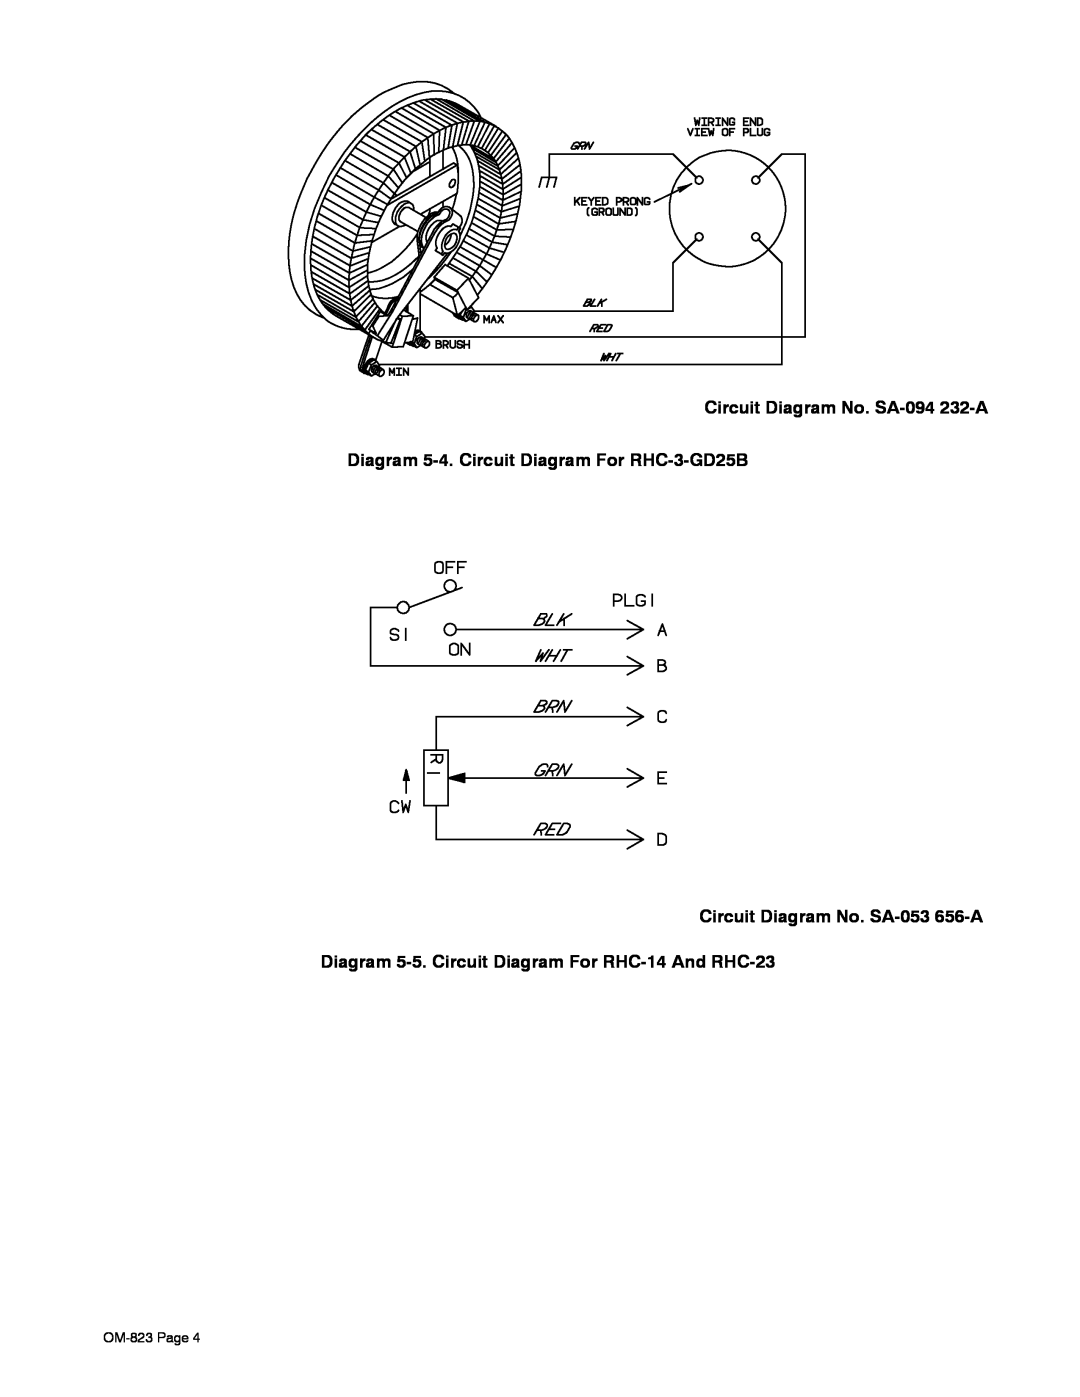 Miller Electric RHC-14 Circuit Diagram No. SA-094 232-A, Diagram 5-4. Circuit Diagram For RHC-3-GD25B, OM-823 Page 